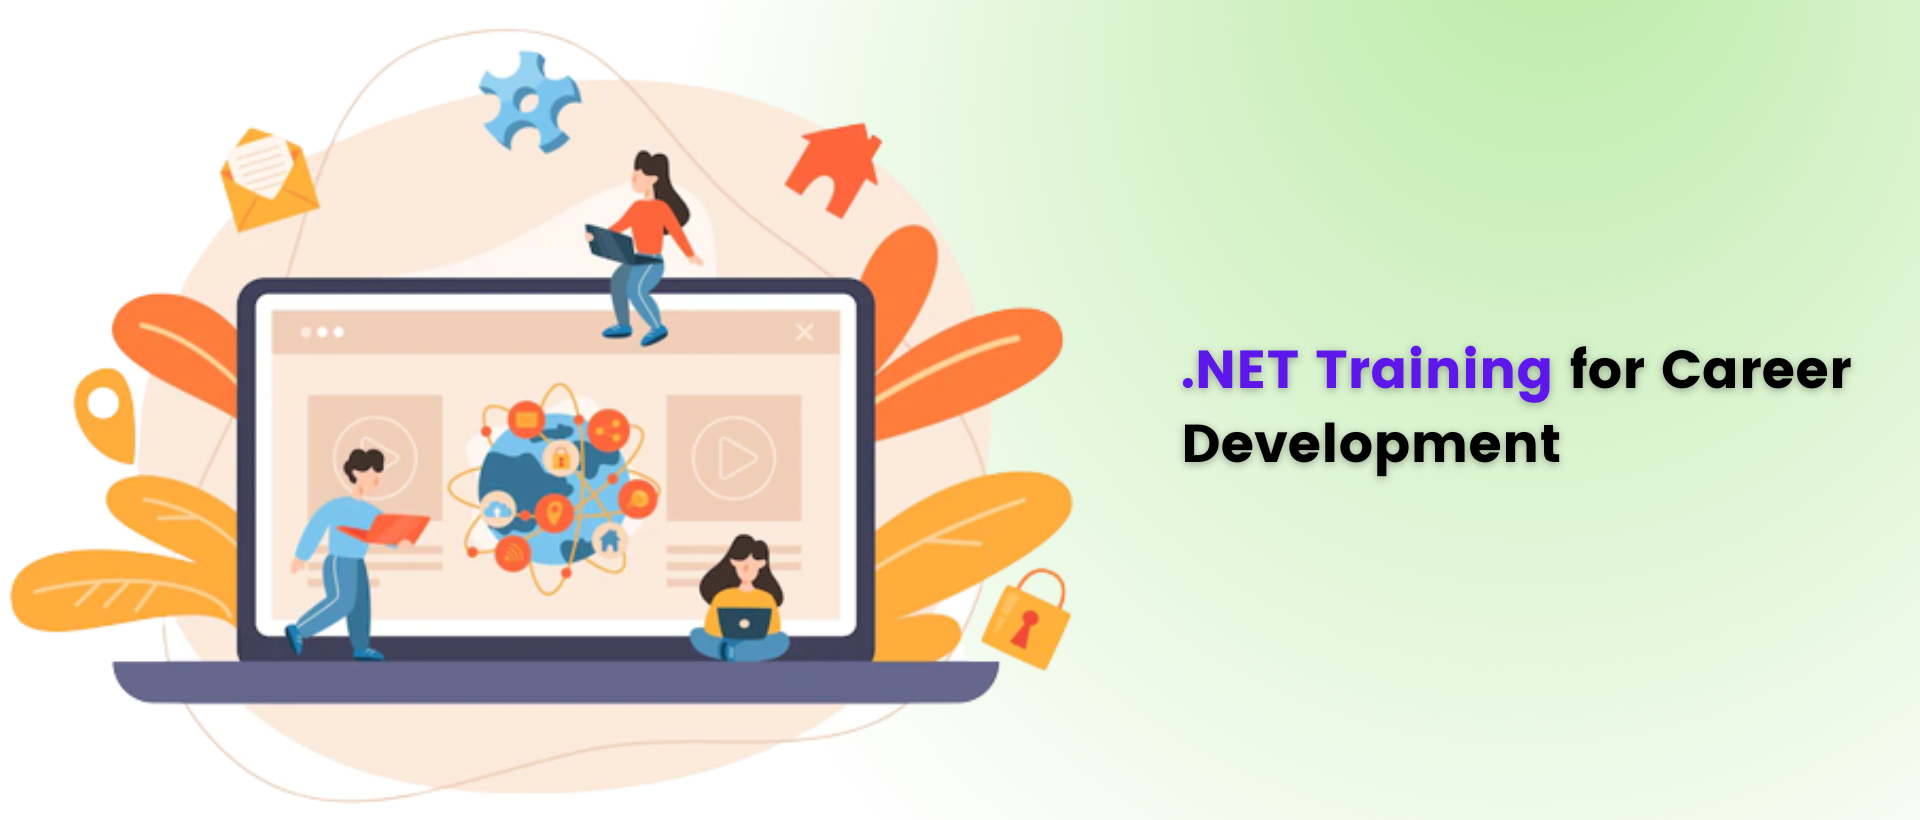 .NET Training for Career Development